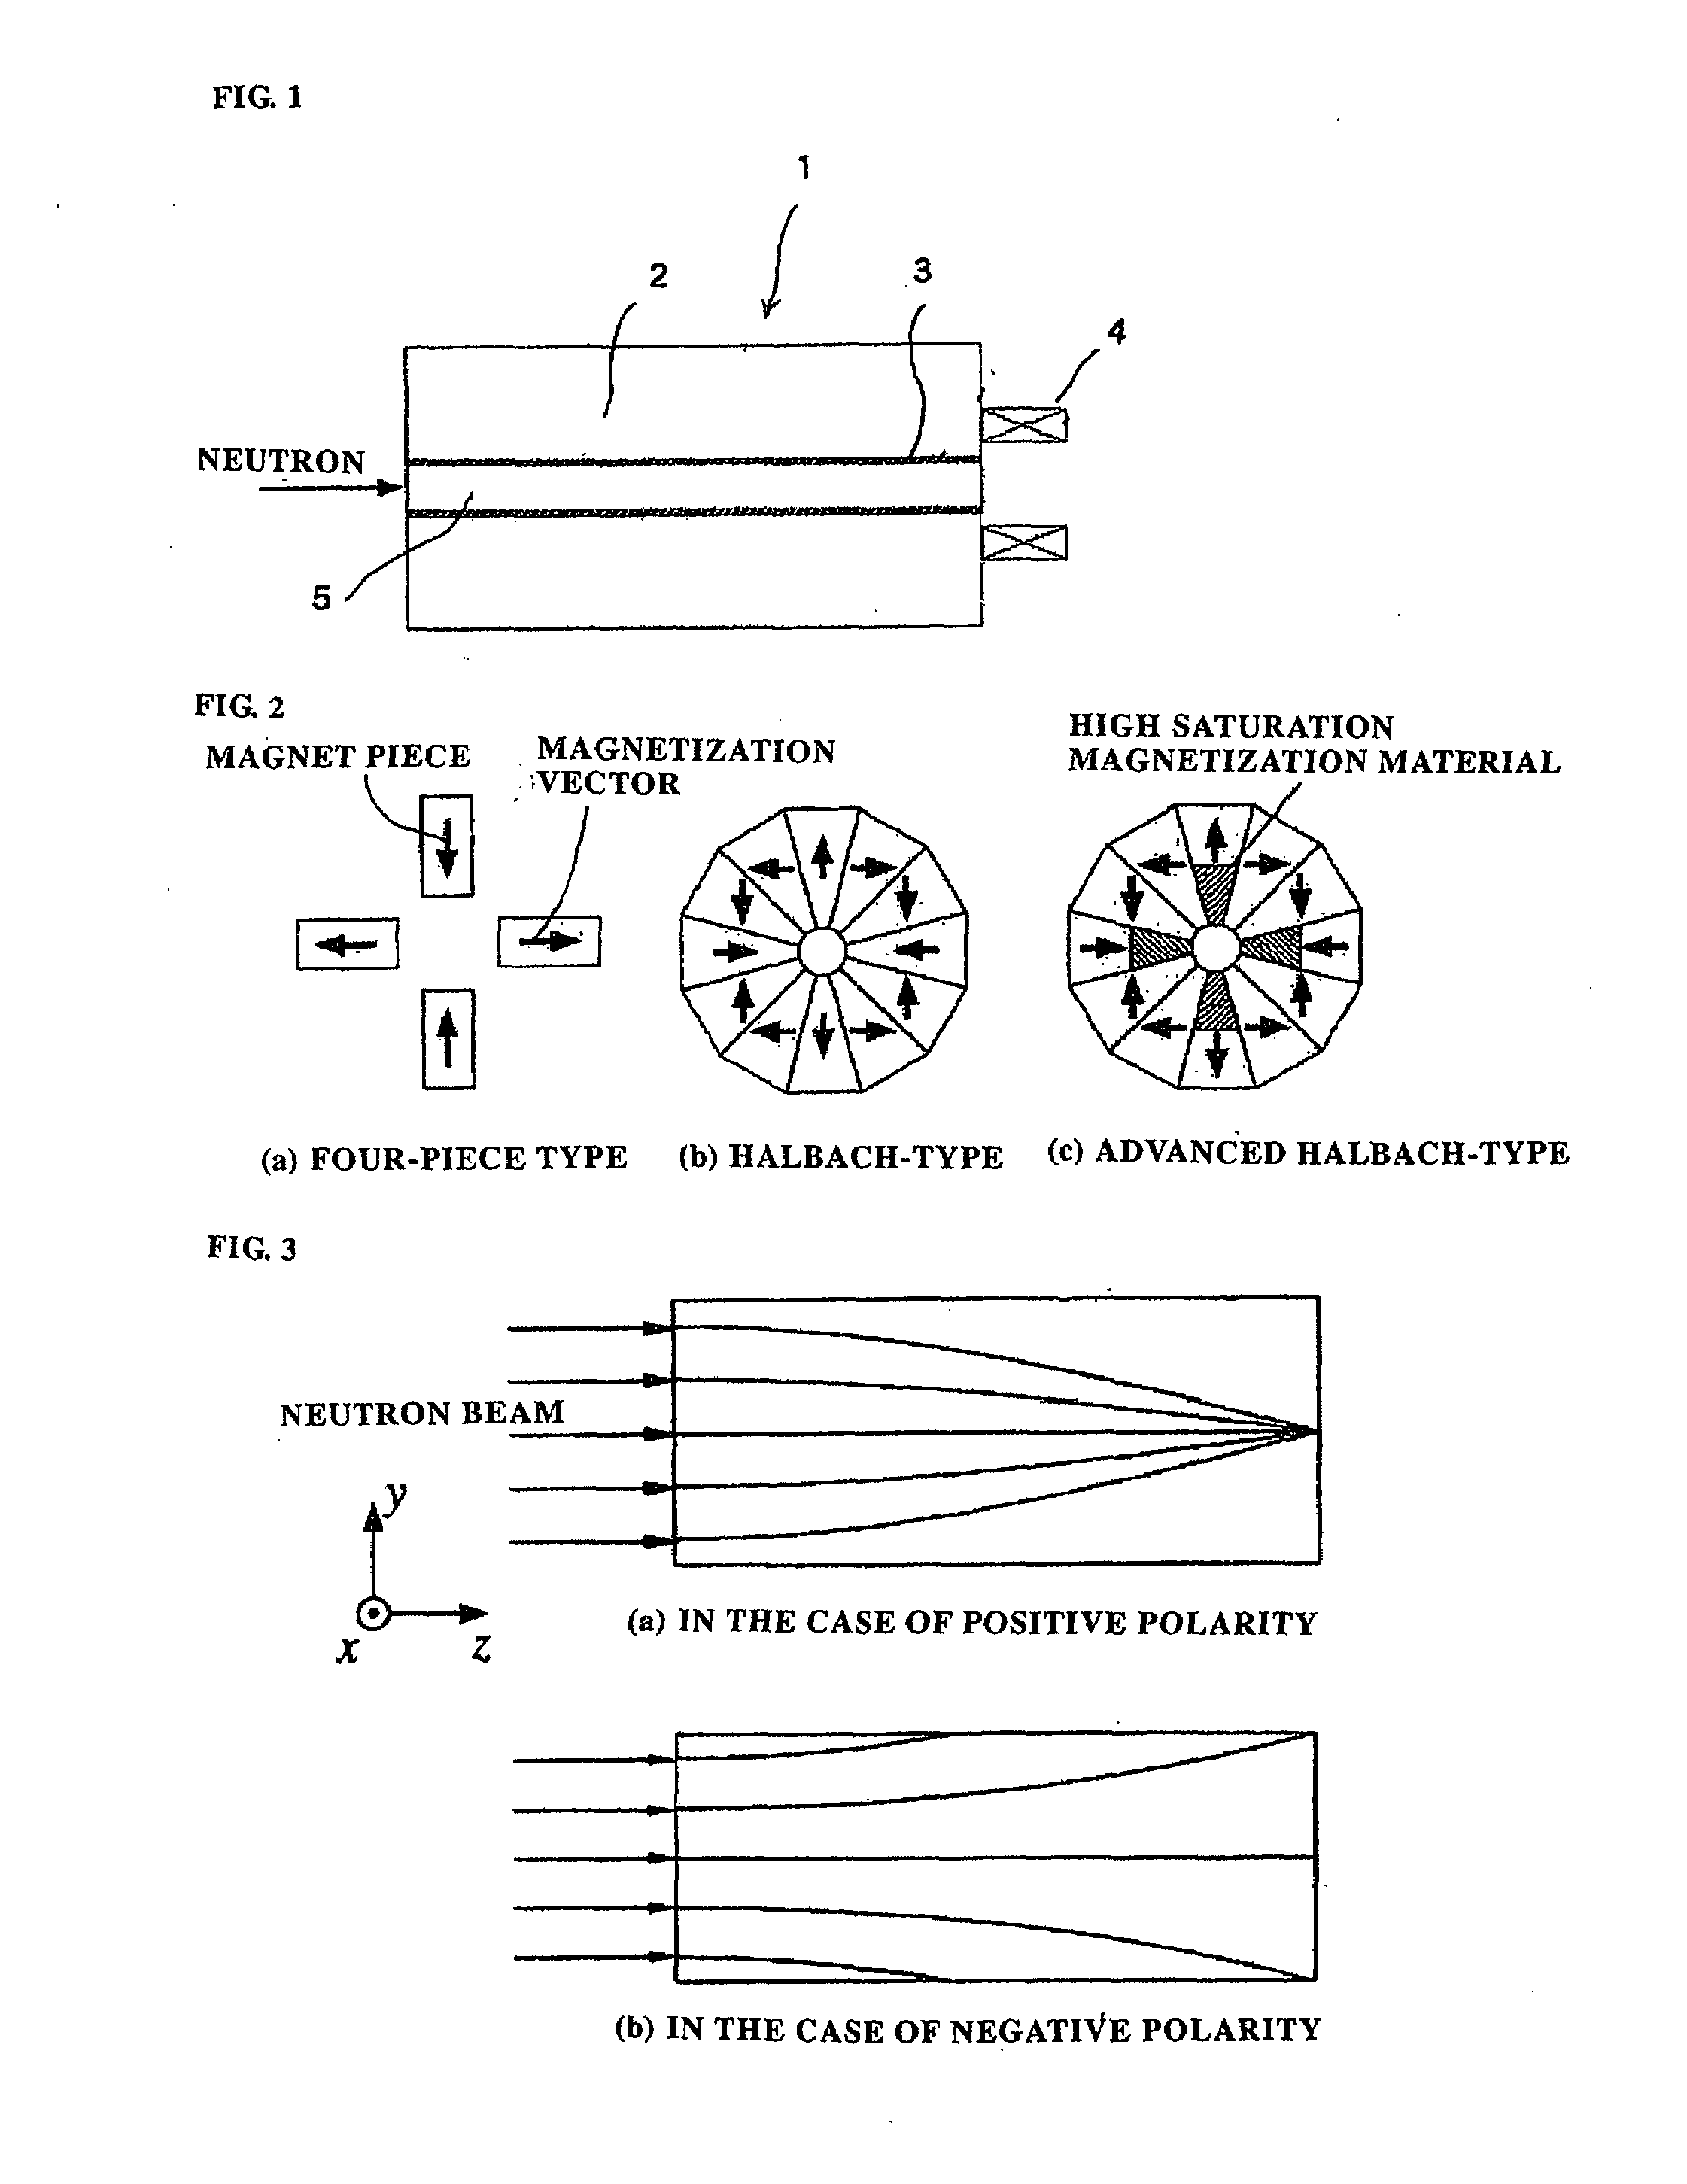 Neutron Polarization Apparatus